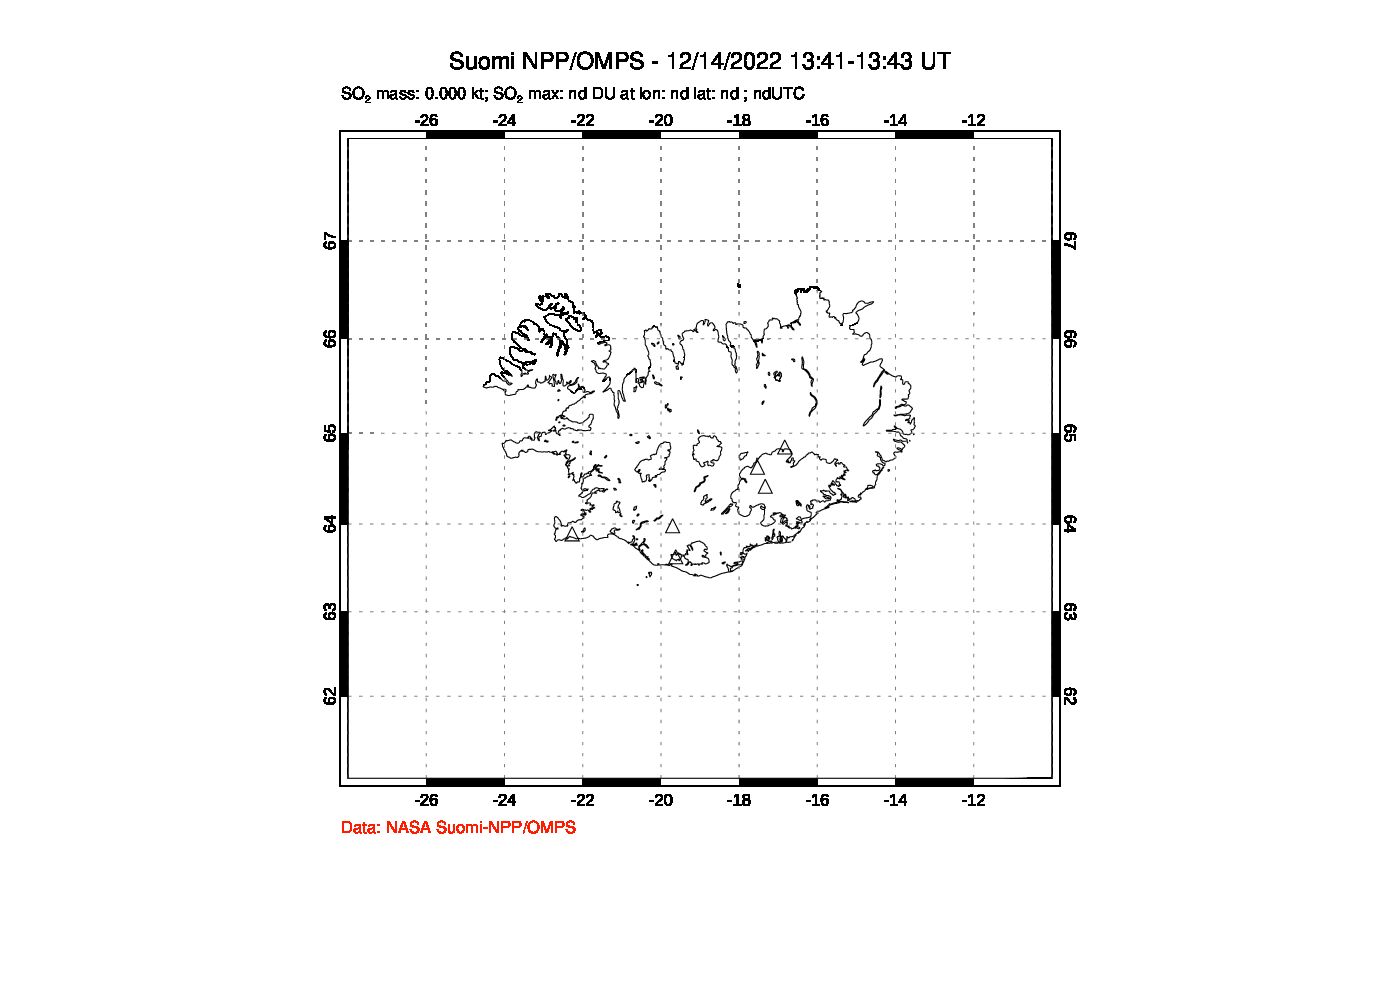 A sulfur dioxide image over Iceland on Dec 14, 2022.